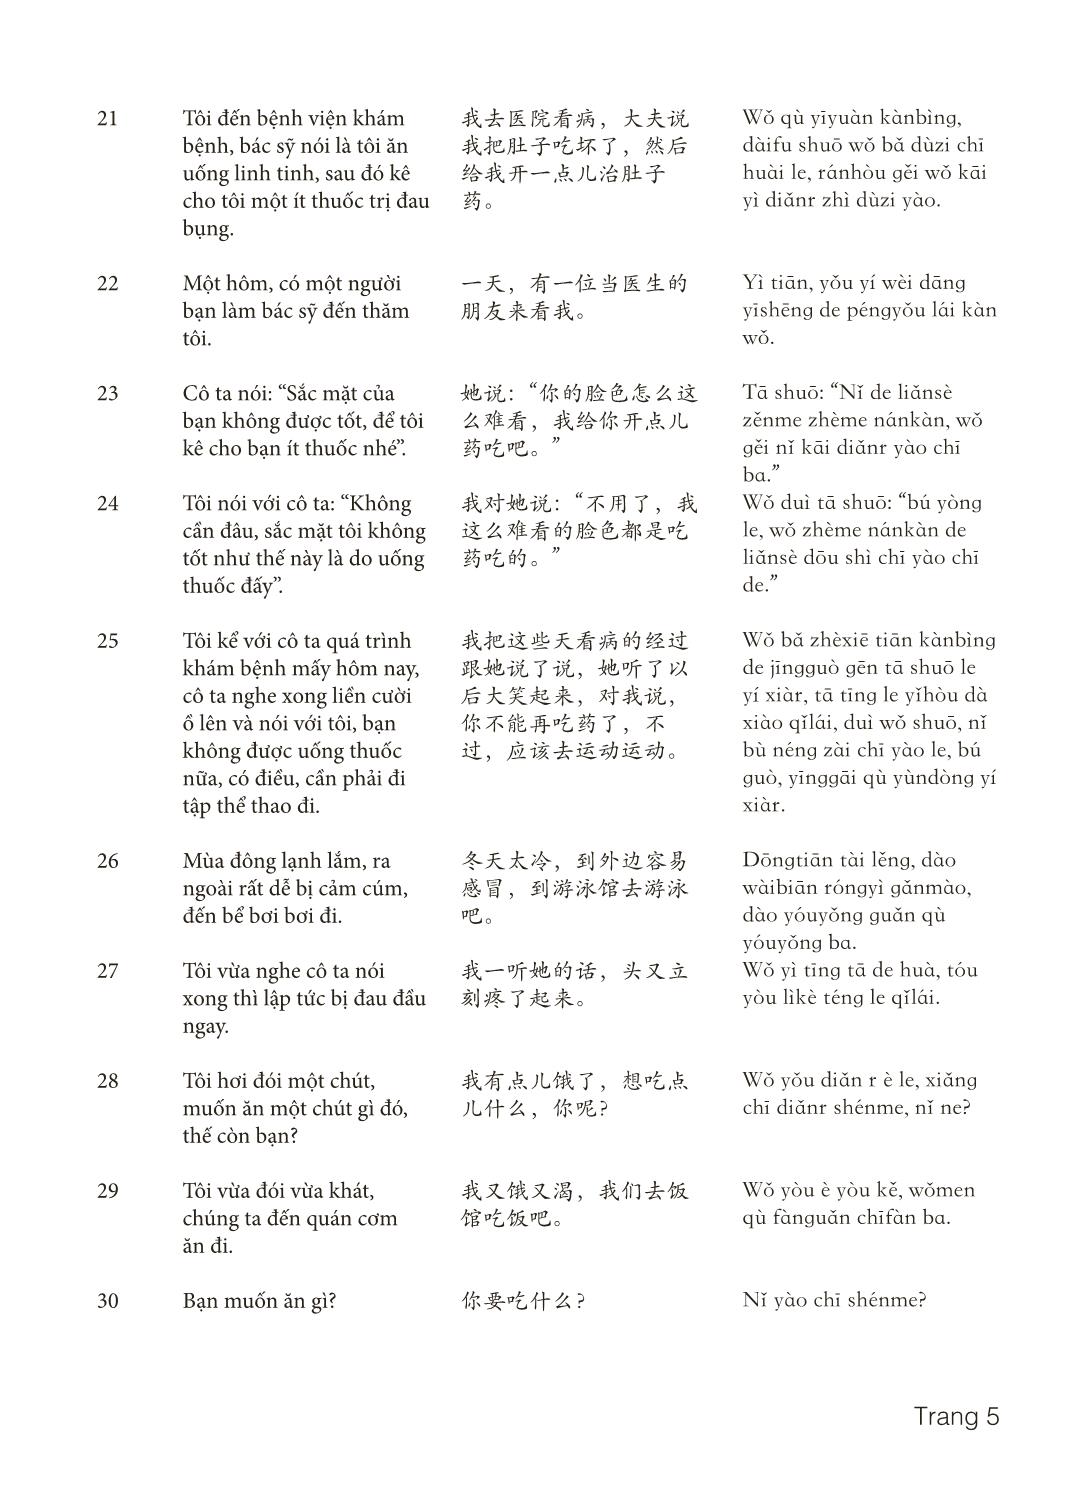 3000 Câu đàm thoại tiếng Hoa - Phần 28 trang 5